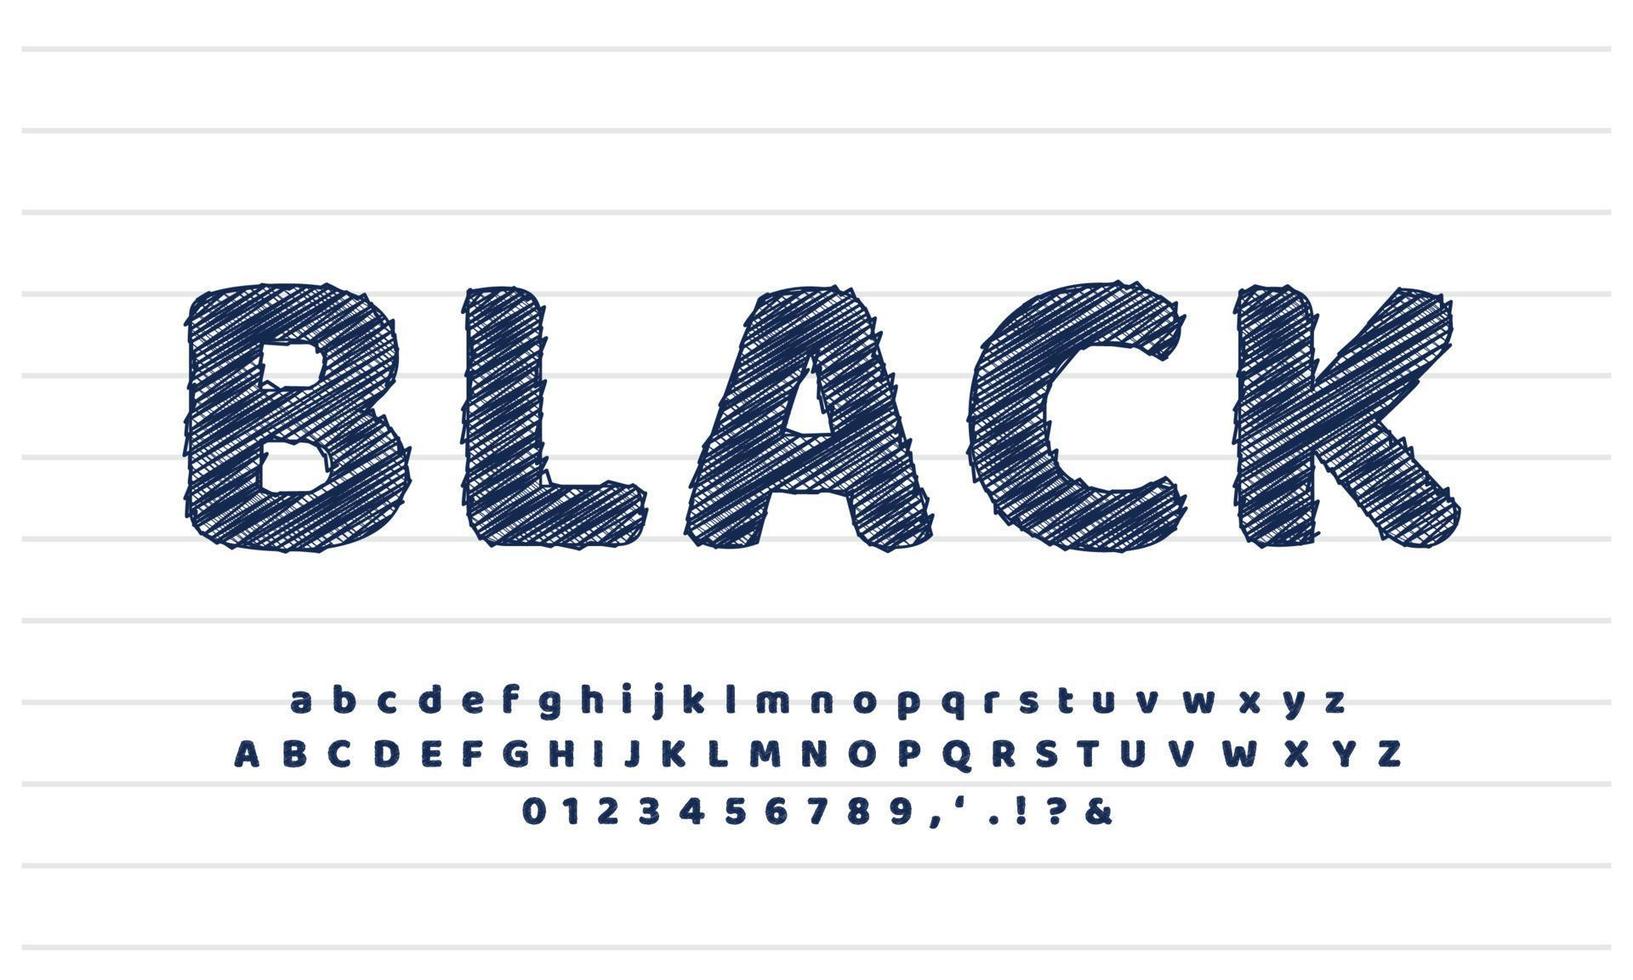 svart modern pennskiss texteffekt eller teckensnittseffektstildesign vektor